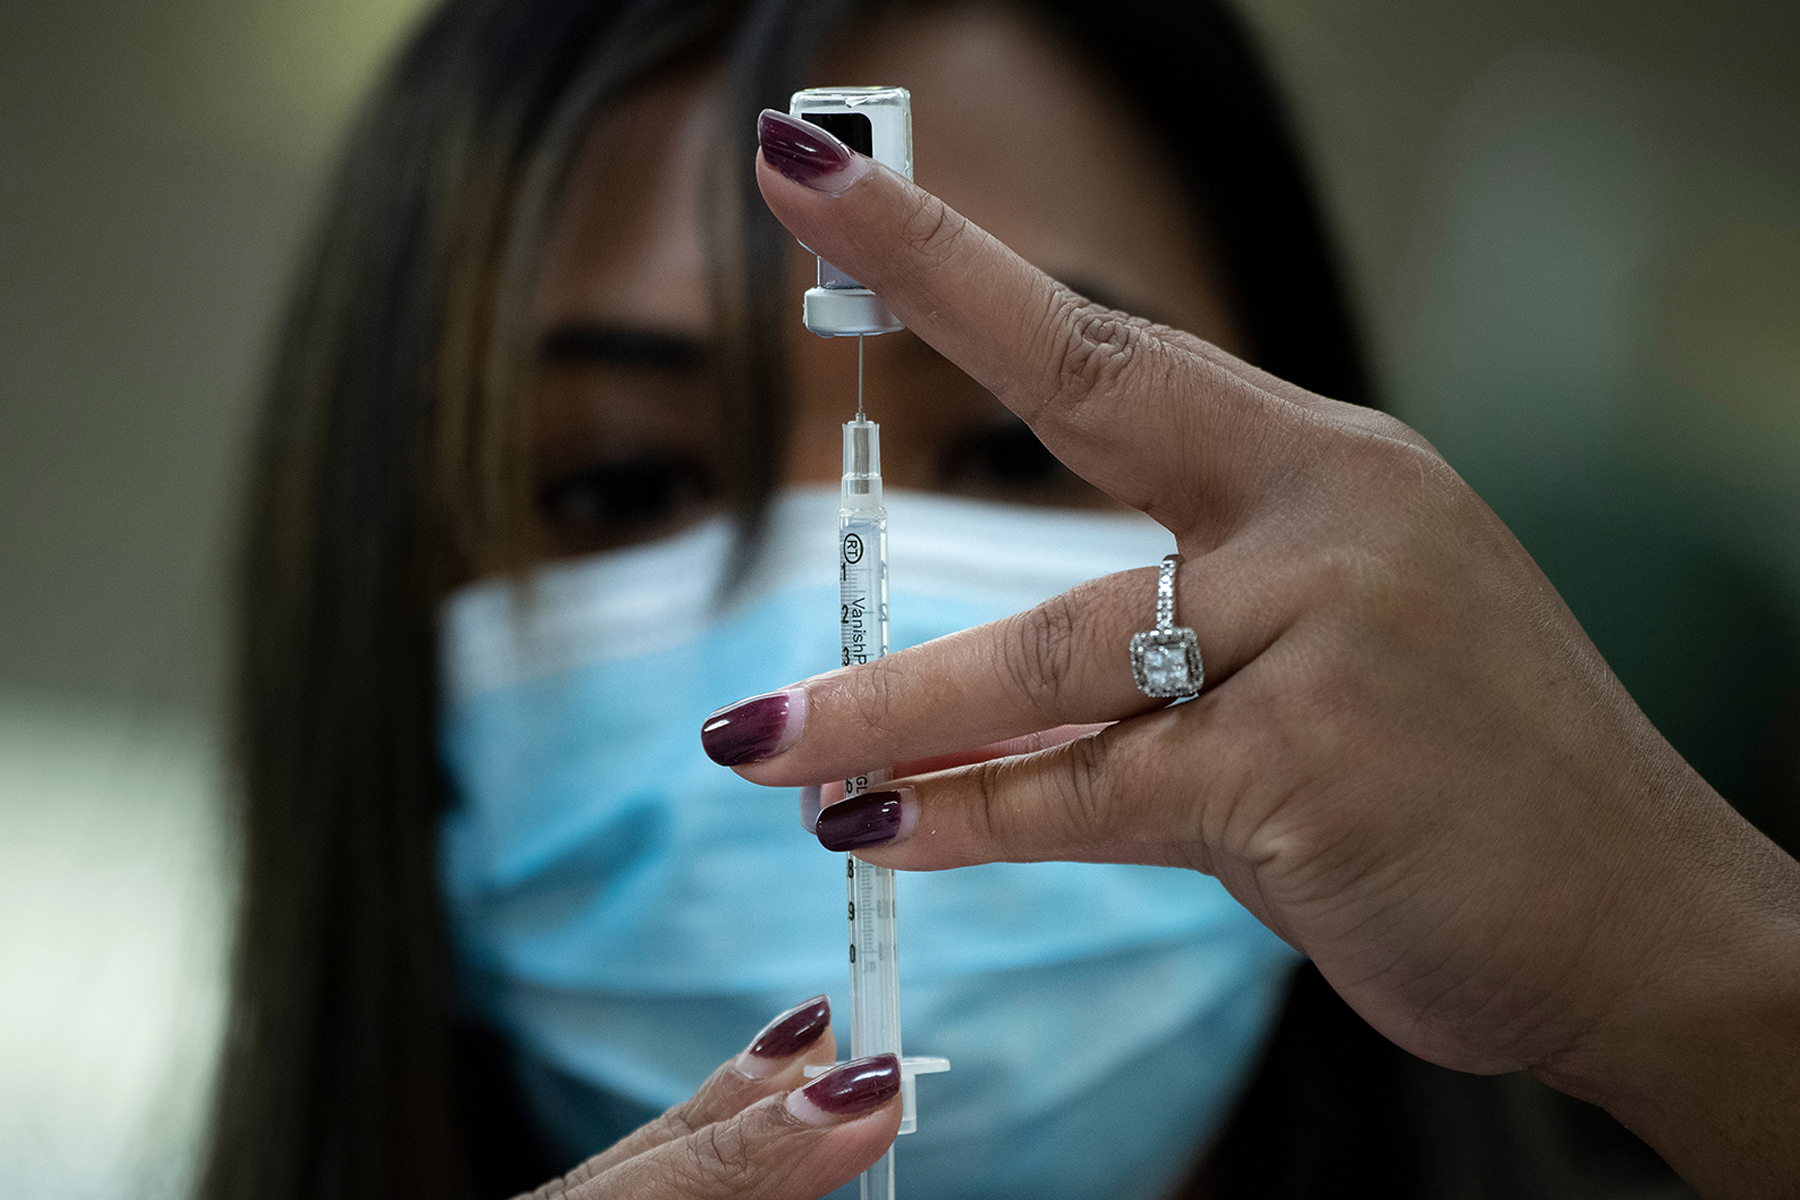 نوبت نگیرید : از مردم بریتیش کلمبیا خواسته شد که برای دوز اول واکسن کووید-19 وقت مجدد نگیرند